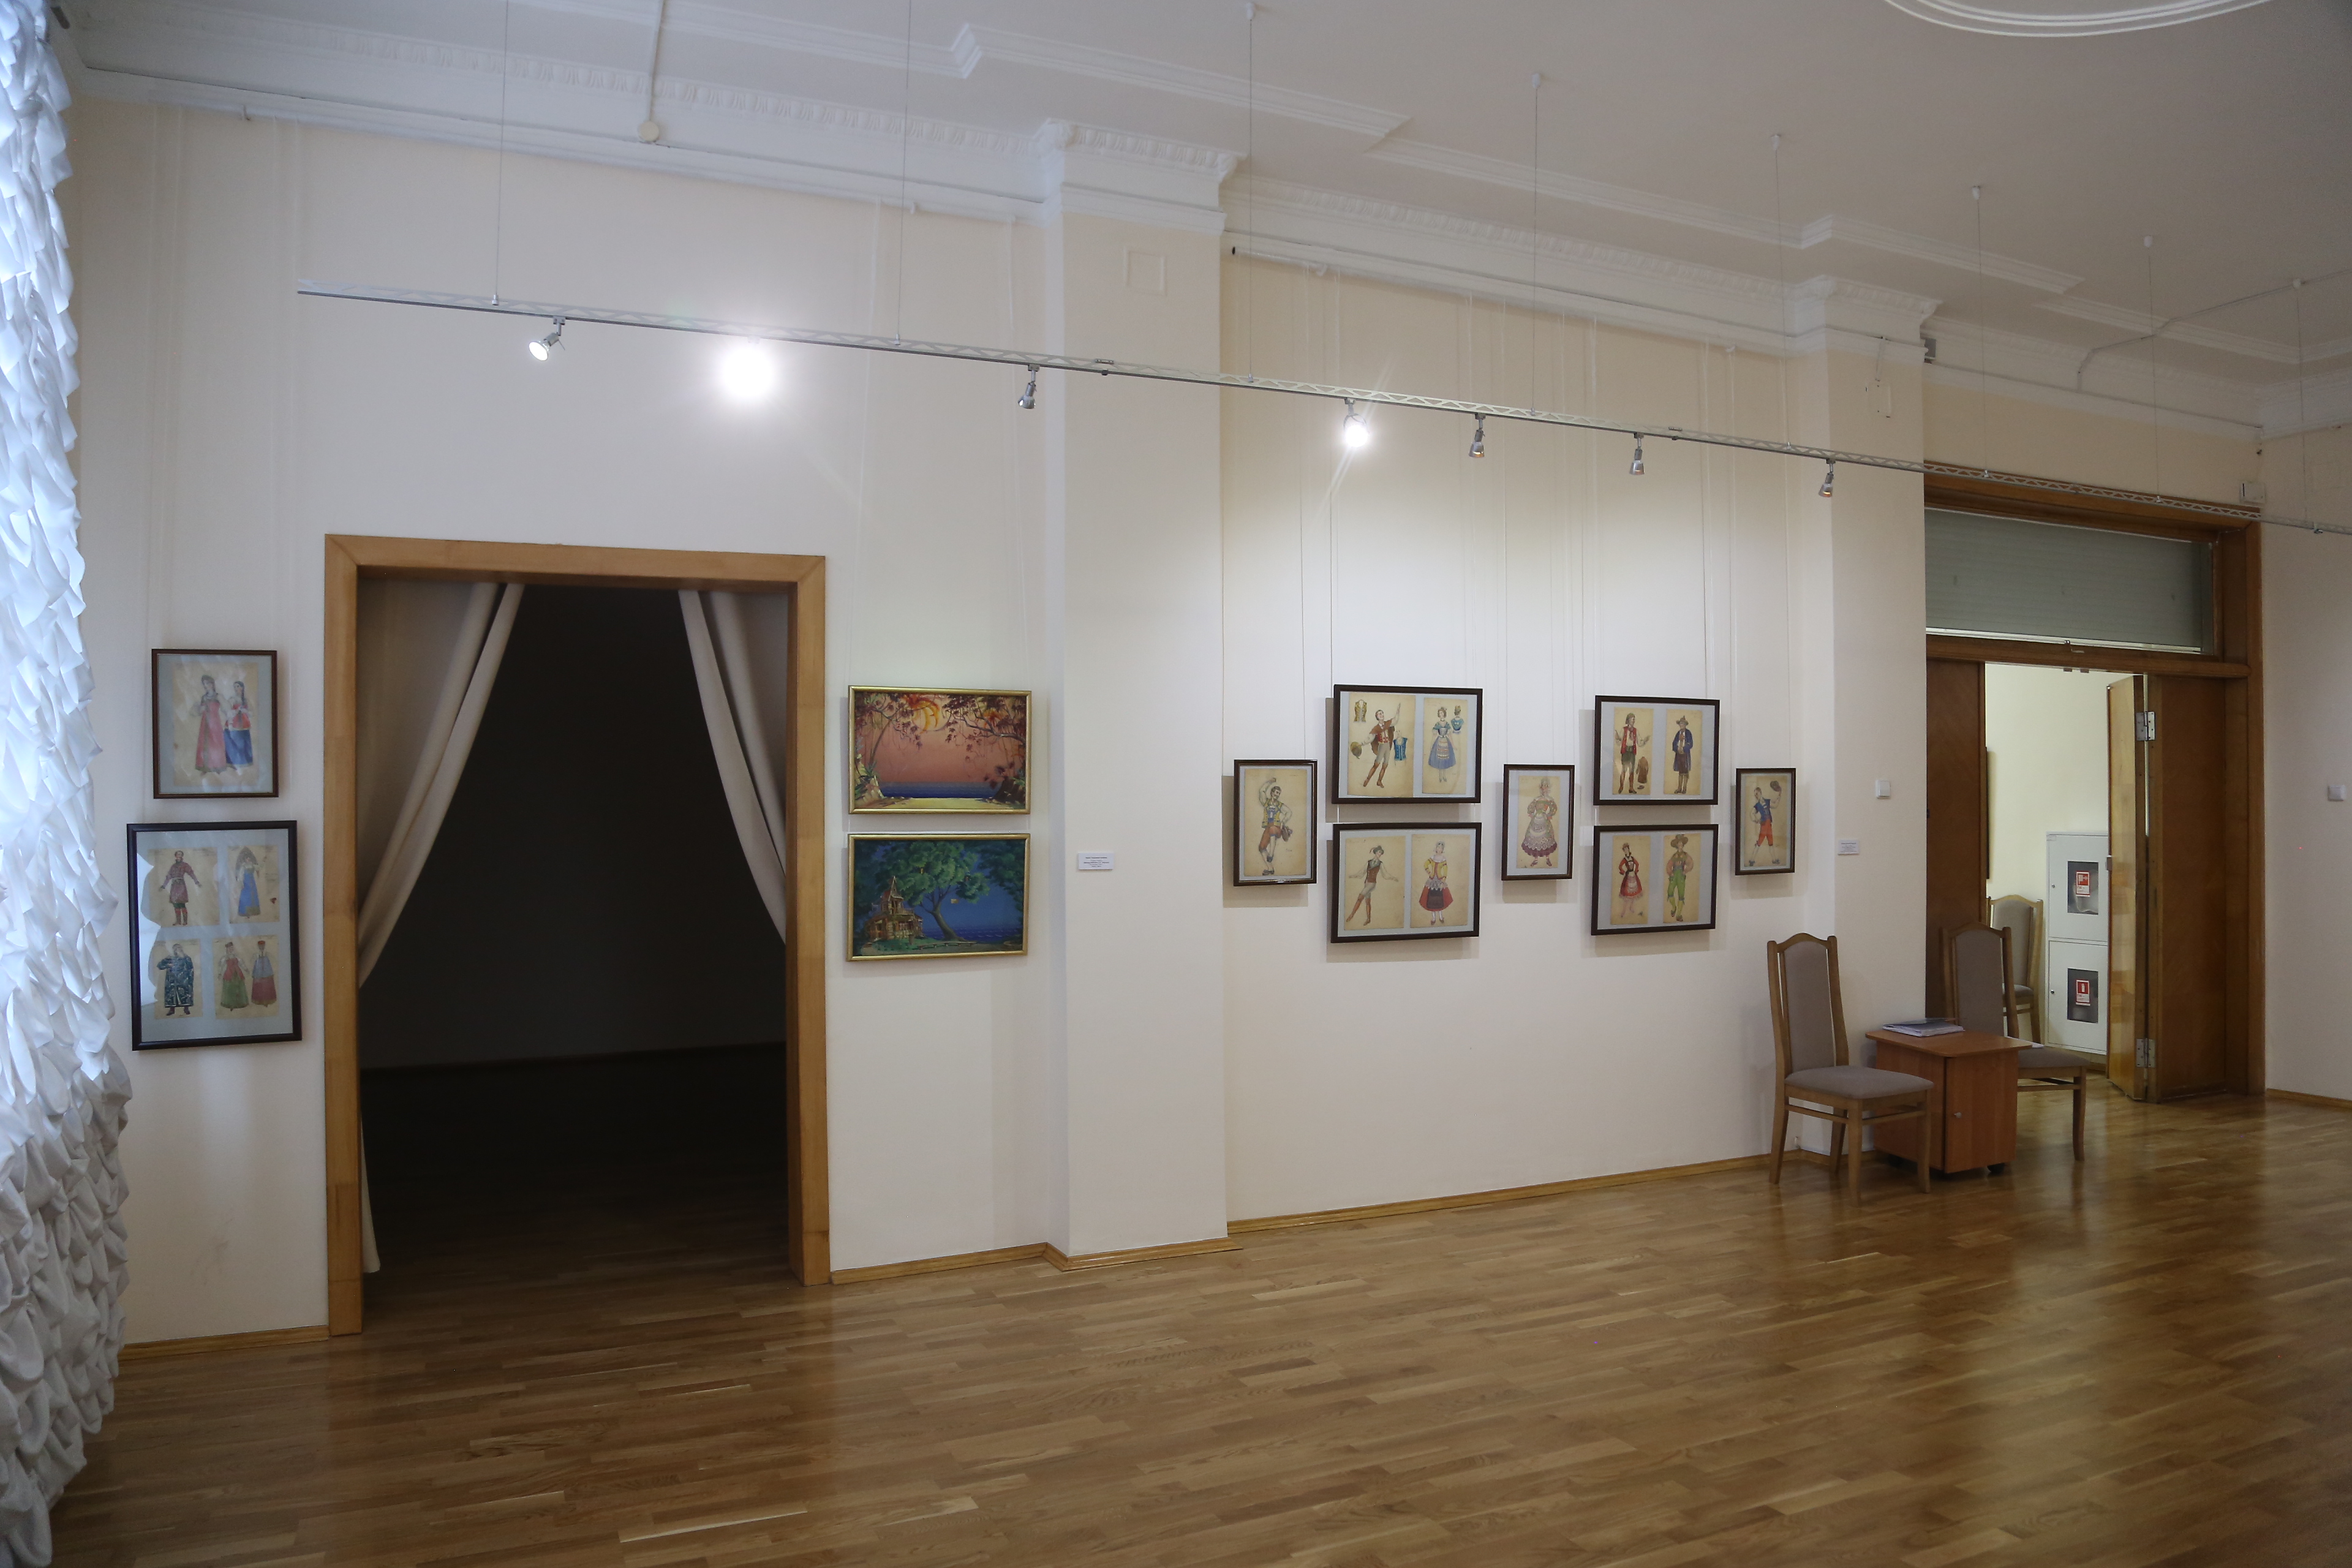 Выставка к 75-летию НОВАТа открылась в художественном музее - НОВАТ - фото №20